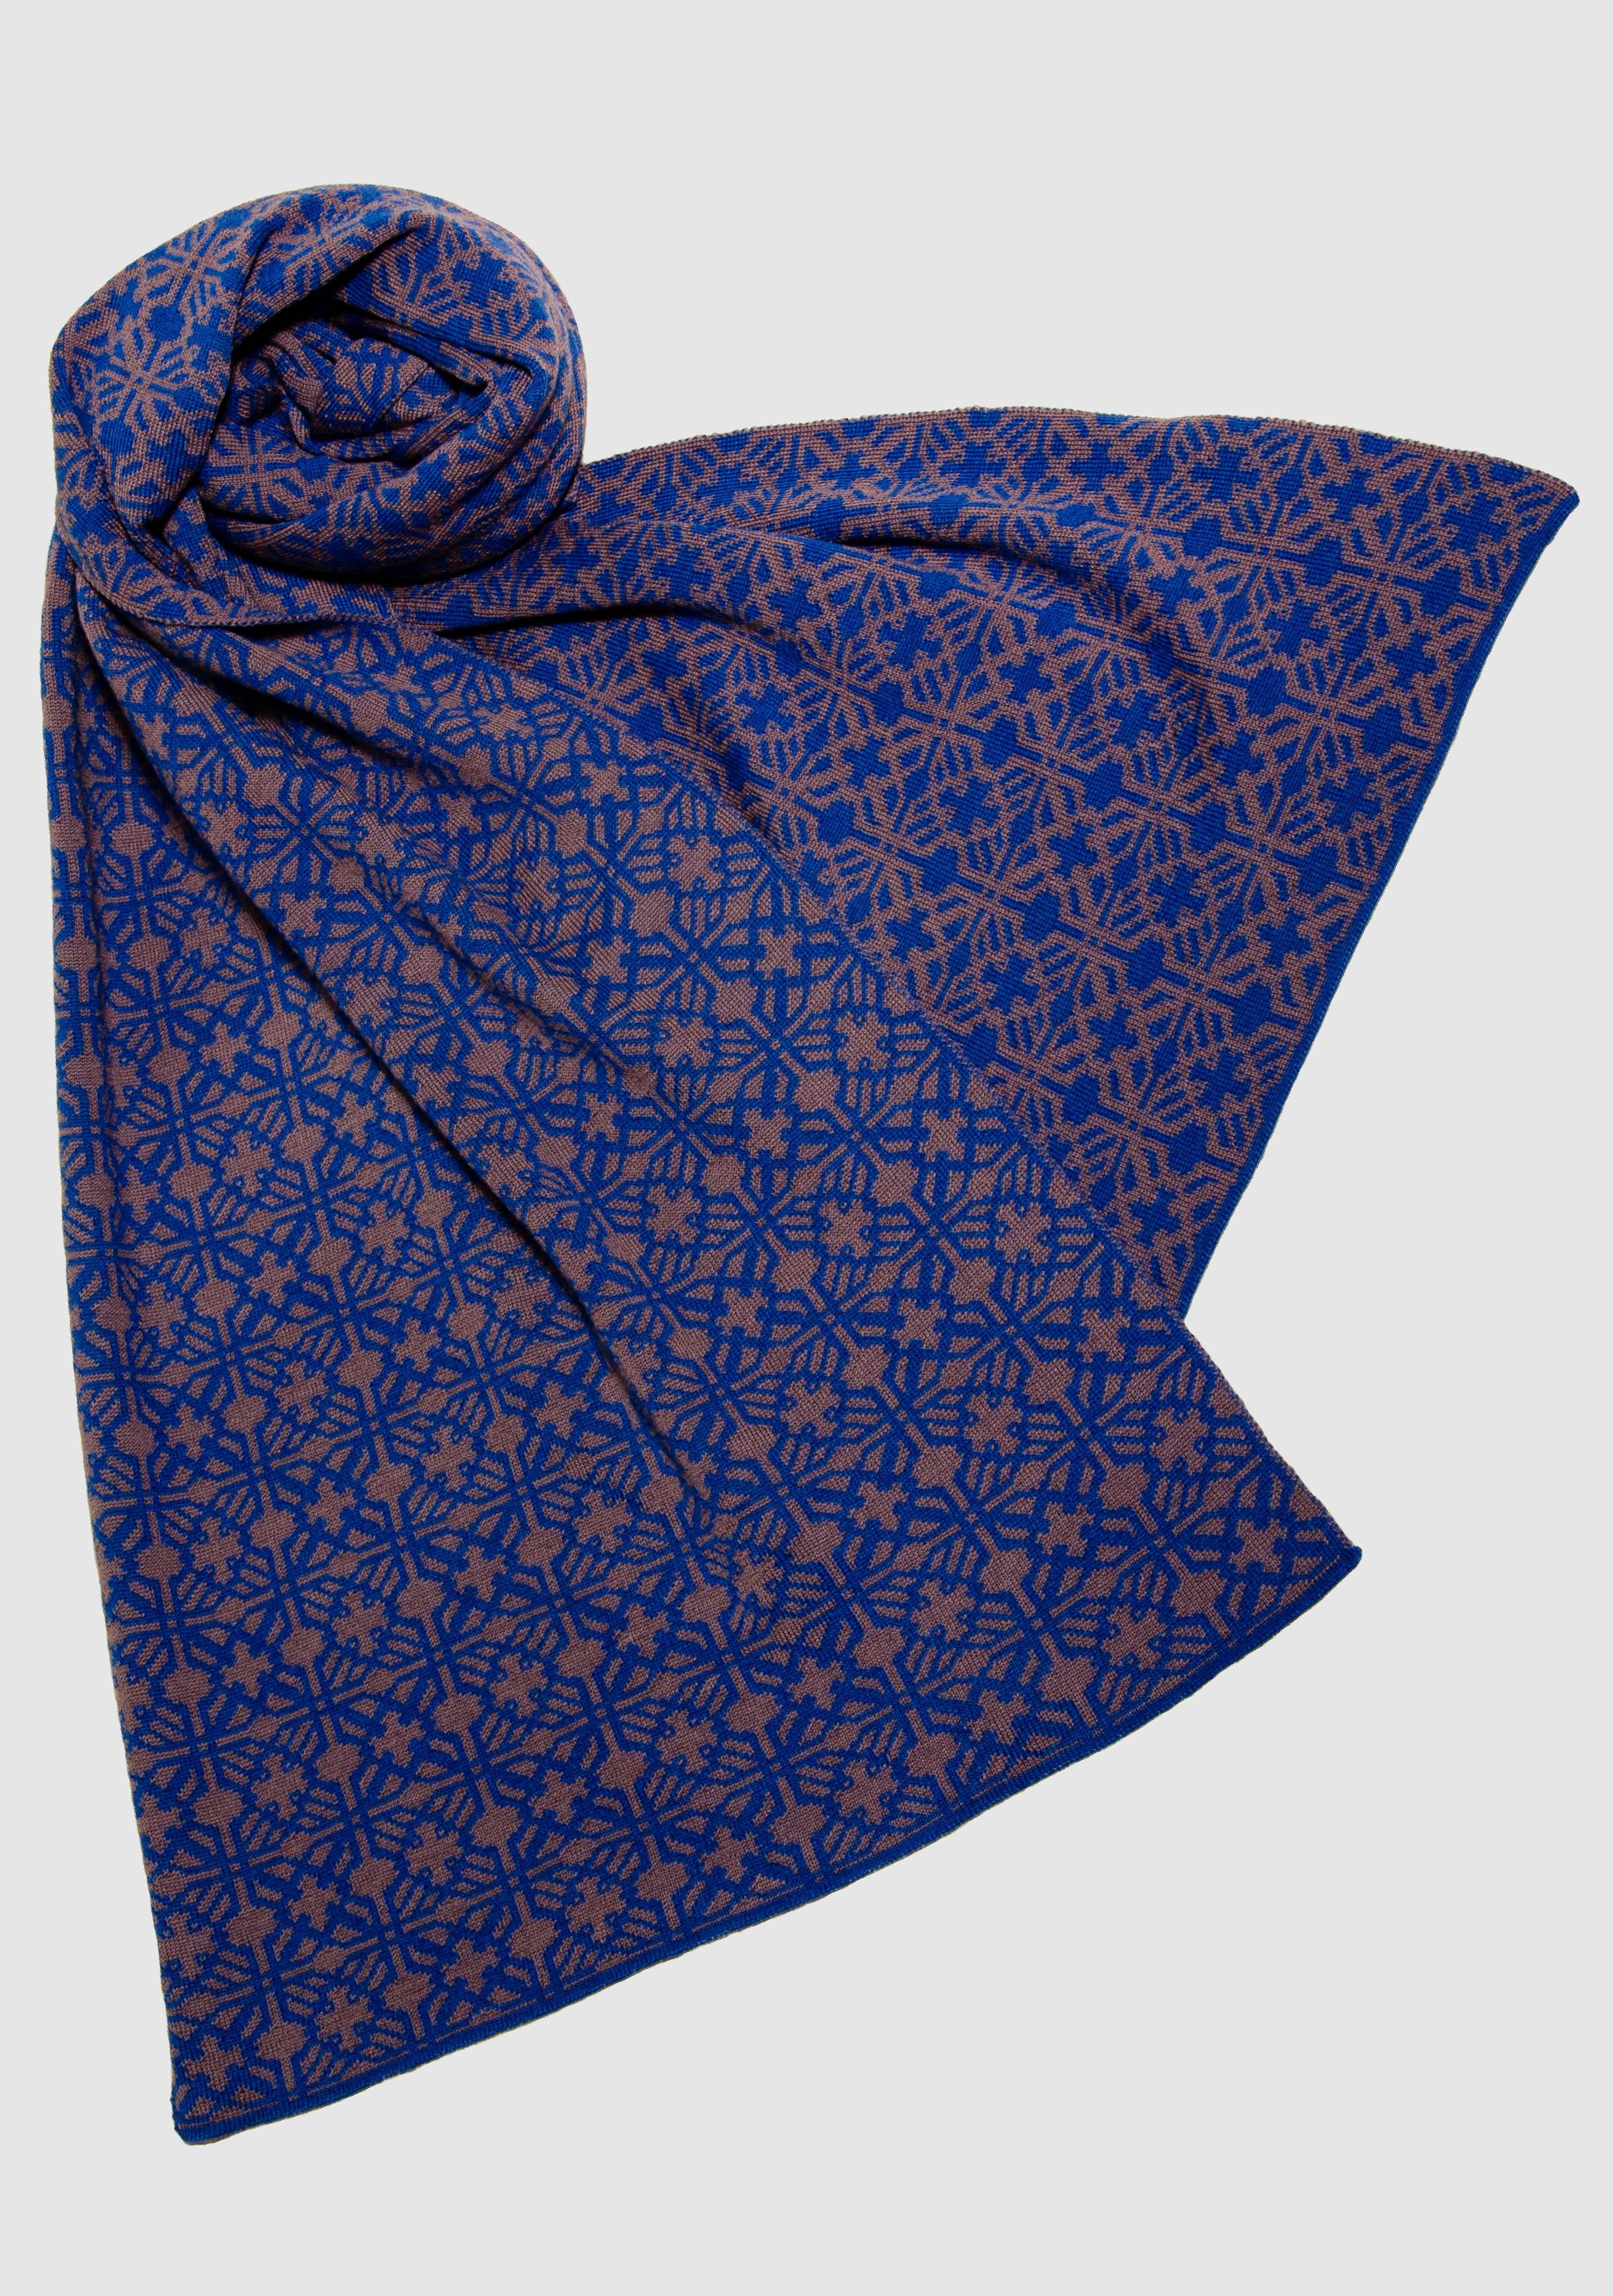 LANARTO slow fashion Wollschal Schal Irland in schönen Farben 100% Merino  extrasoft